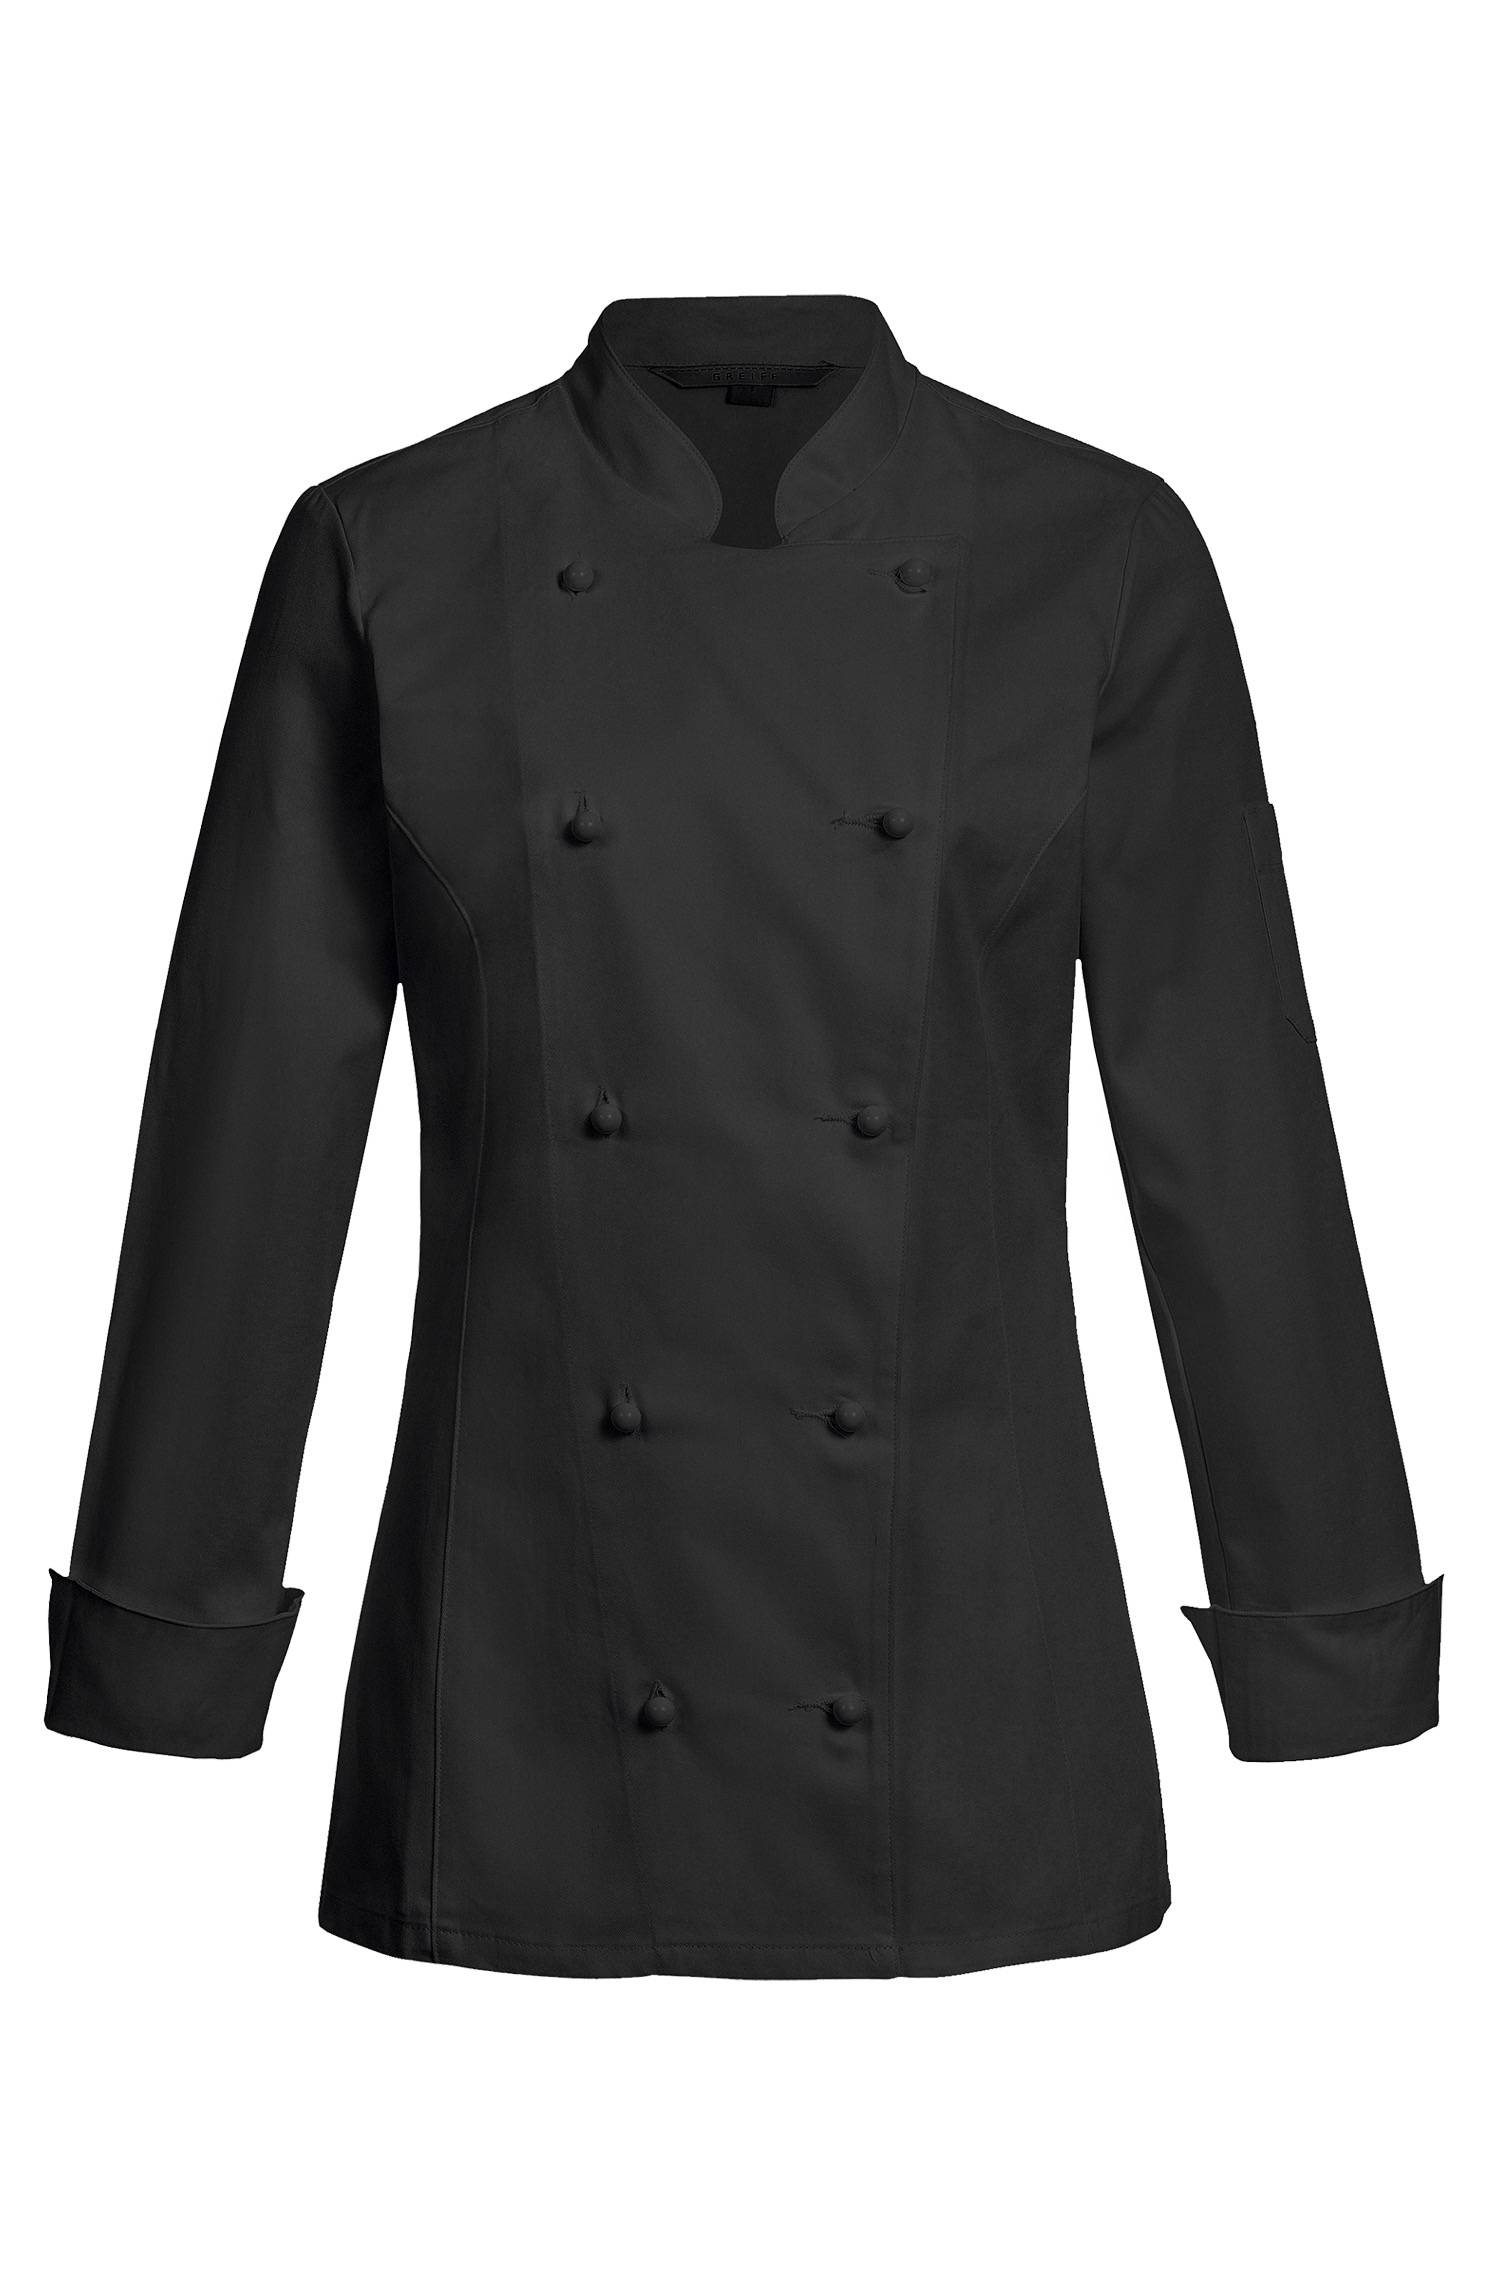 Noir veste de cuisine femme boutonnage classique à double boutonnage regular fit